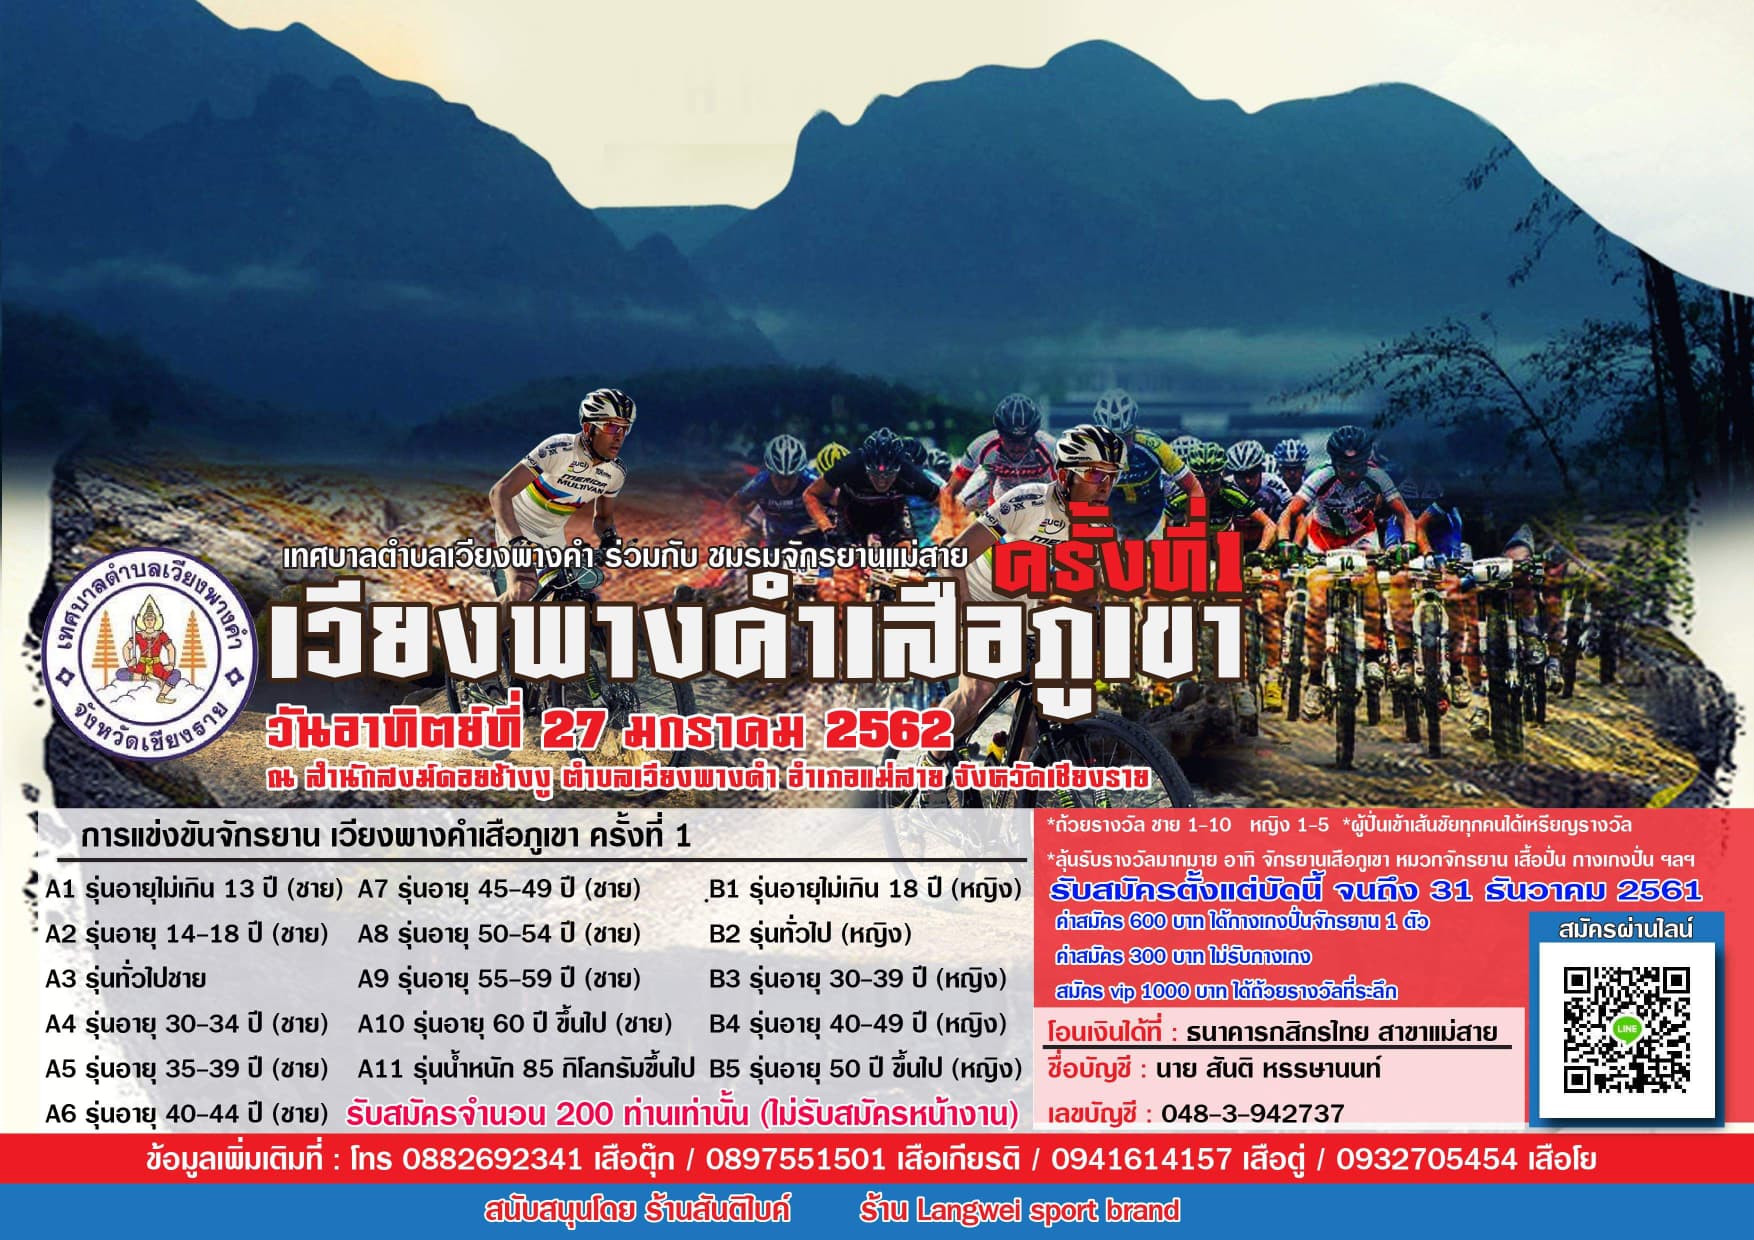 กิจกรรมปั่นจักรยาน เวียงพางคำเสือภูเขา ครั้งที่ 1 วันที่ 27 มกราคม 2562 ณ สำนักสงฆ์ดอยช้างงู จังหวัดเชียงราย